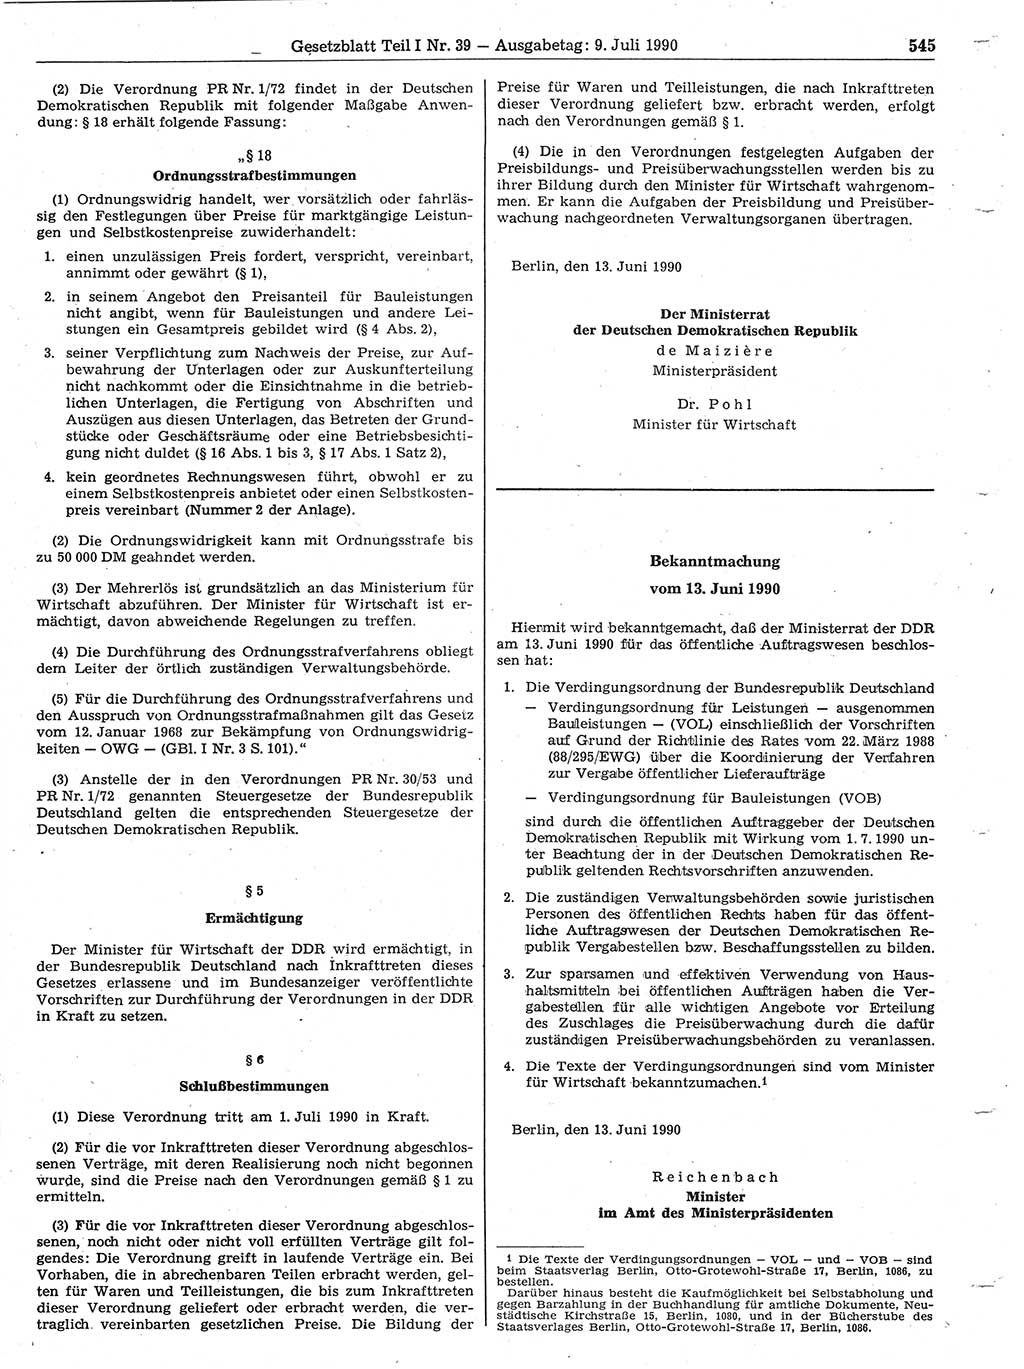 Gesetzblatt (GBl.) der Deutschen Demokratischen Republik (DDR) Teil Ⅰ 1990, Seite 545 (GBl. DDR Ⅰ 1990, S. 545)